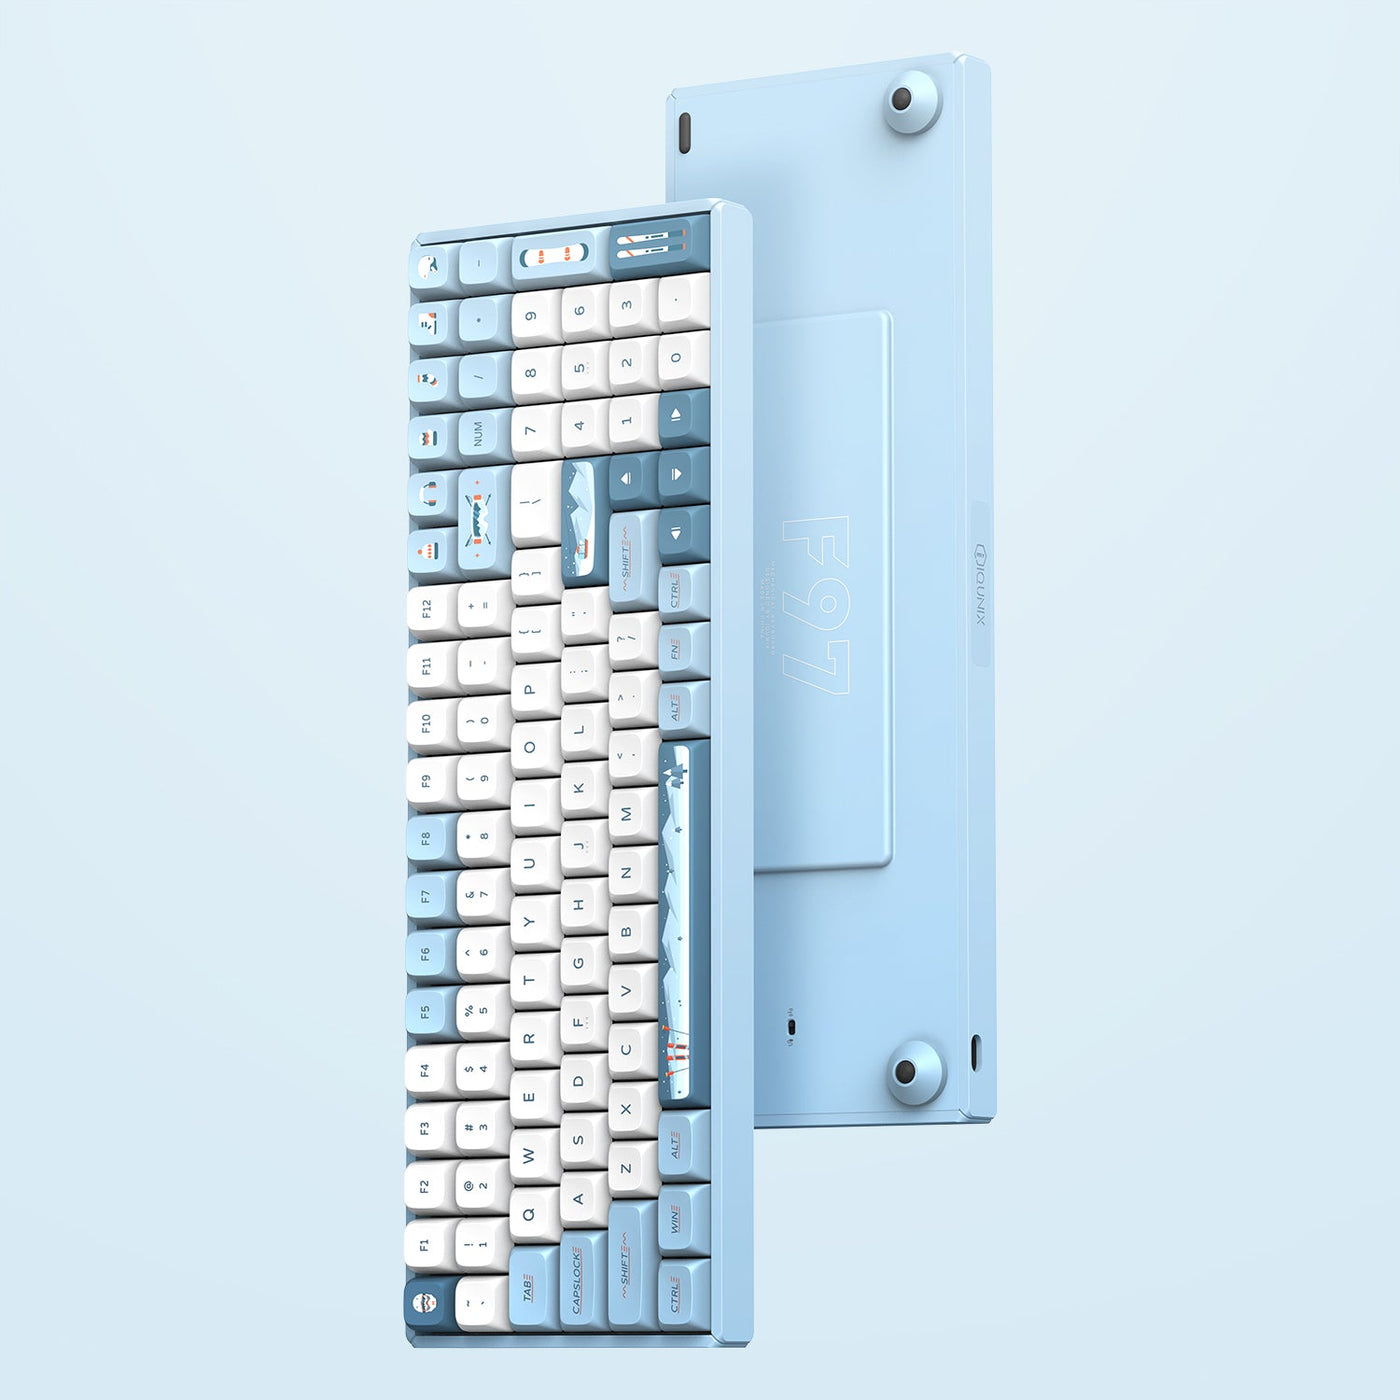 compact keyboard with numpad